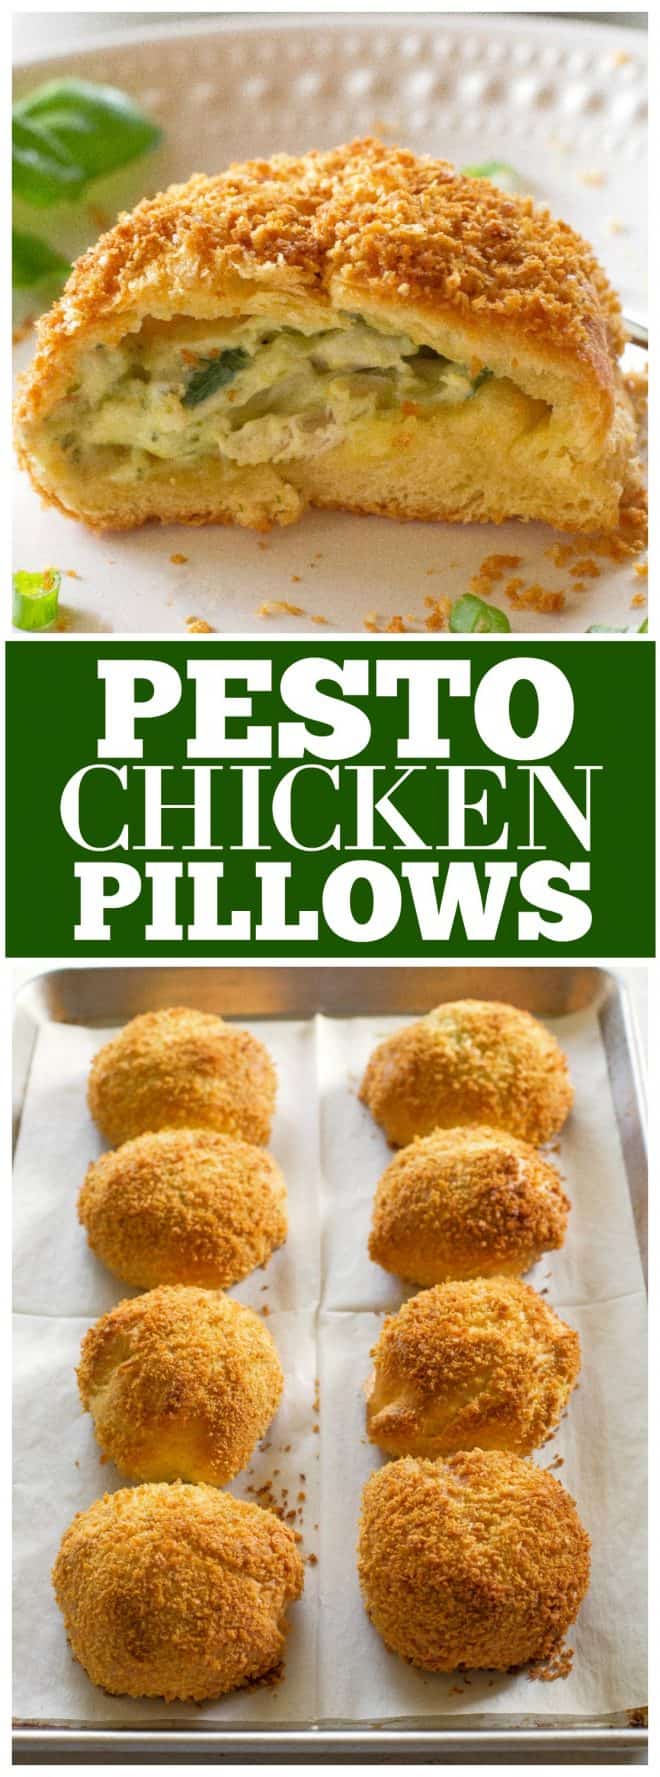 Pesto Chicken Pillows